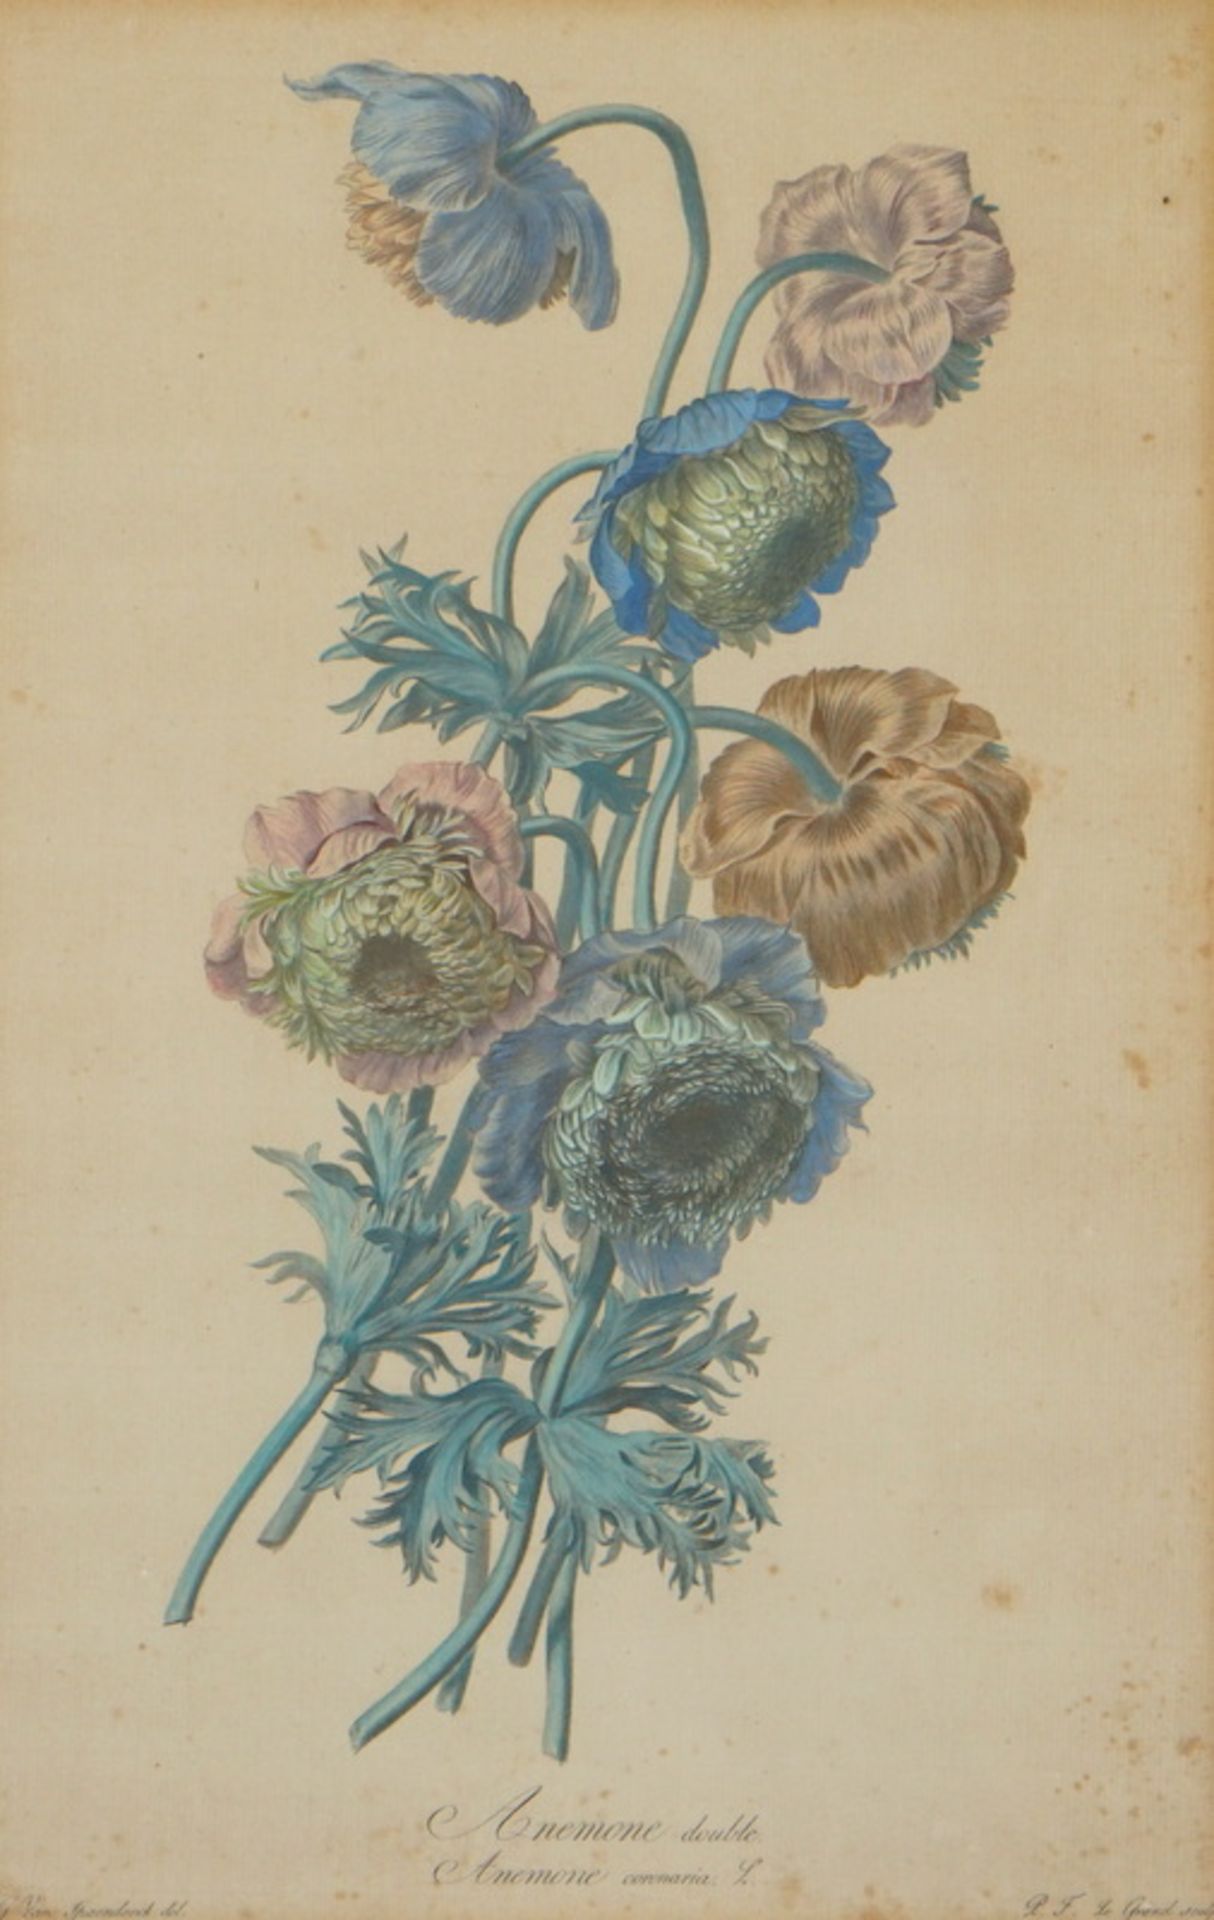 Sammlung antike Graphiken aus der Botanik "Anemone" etc.